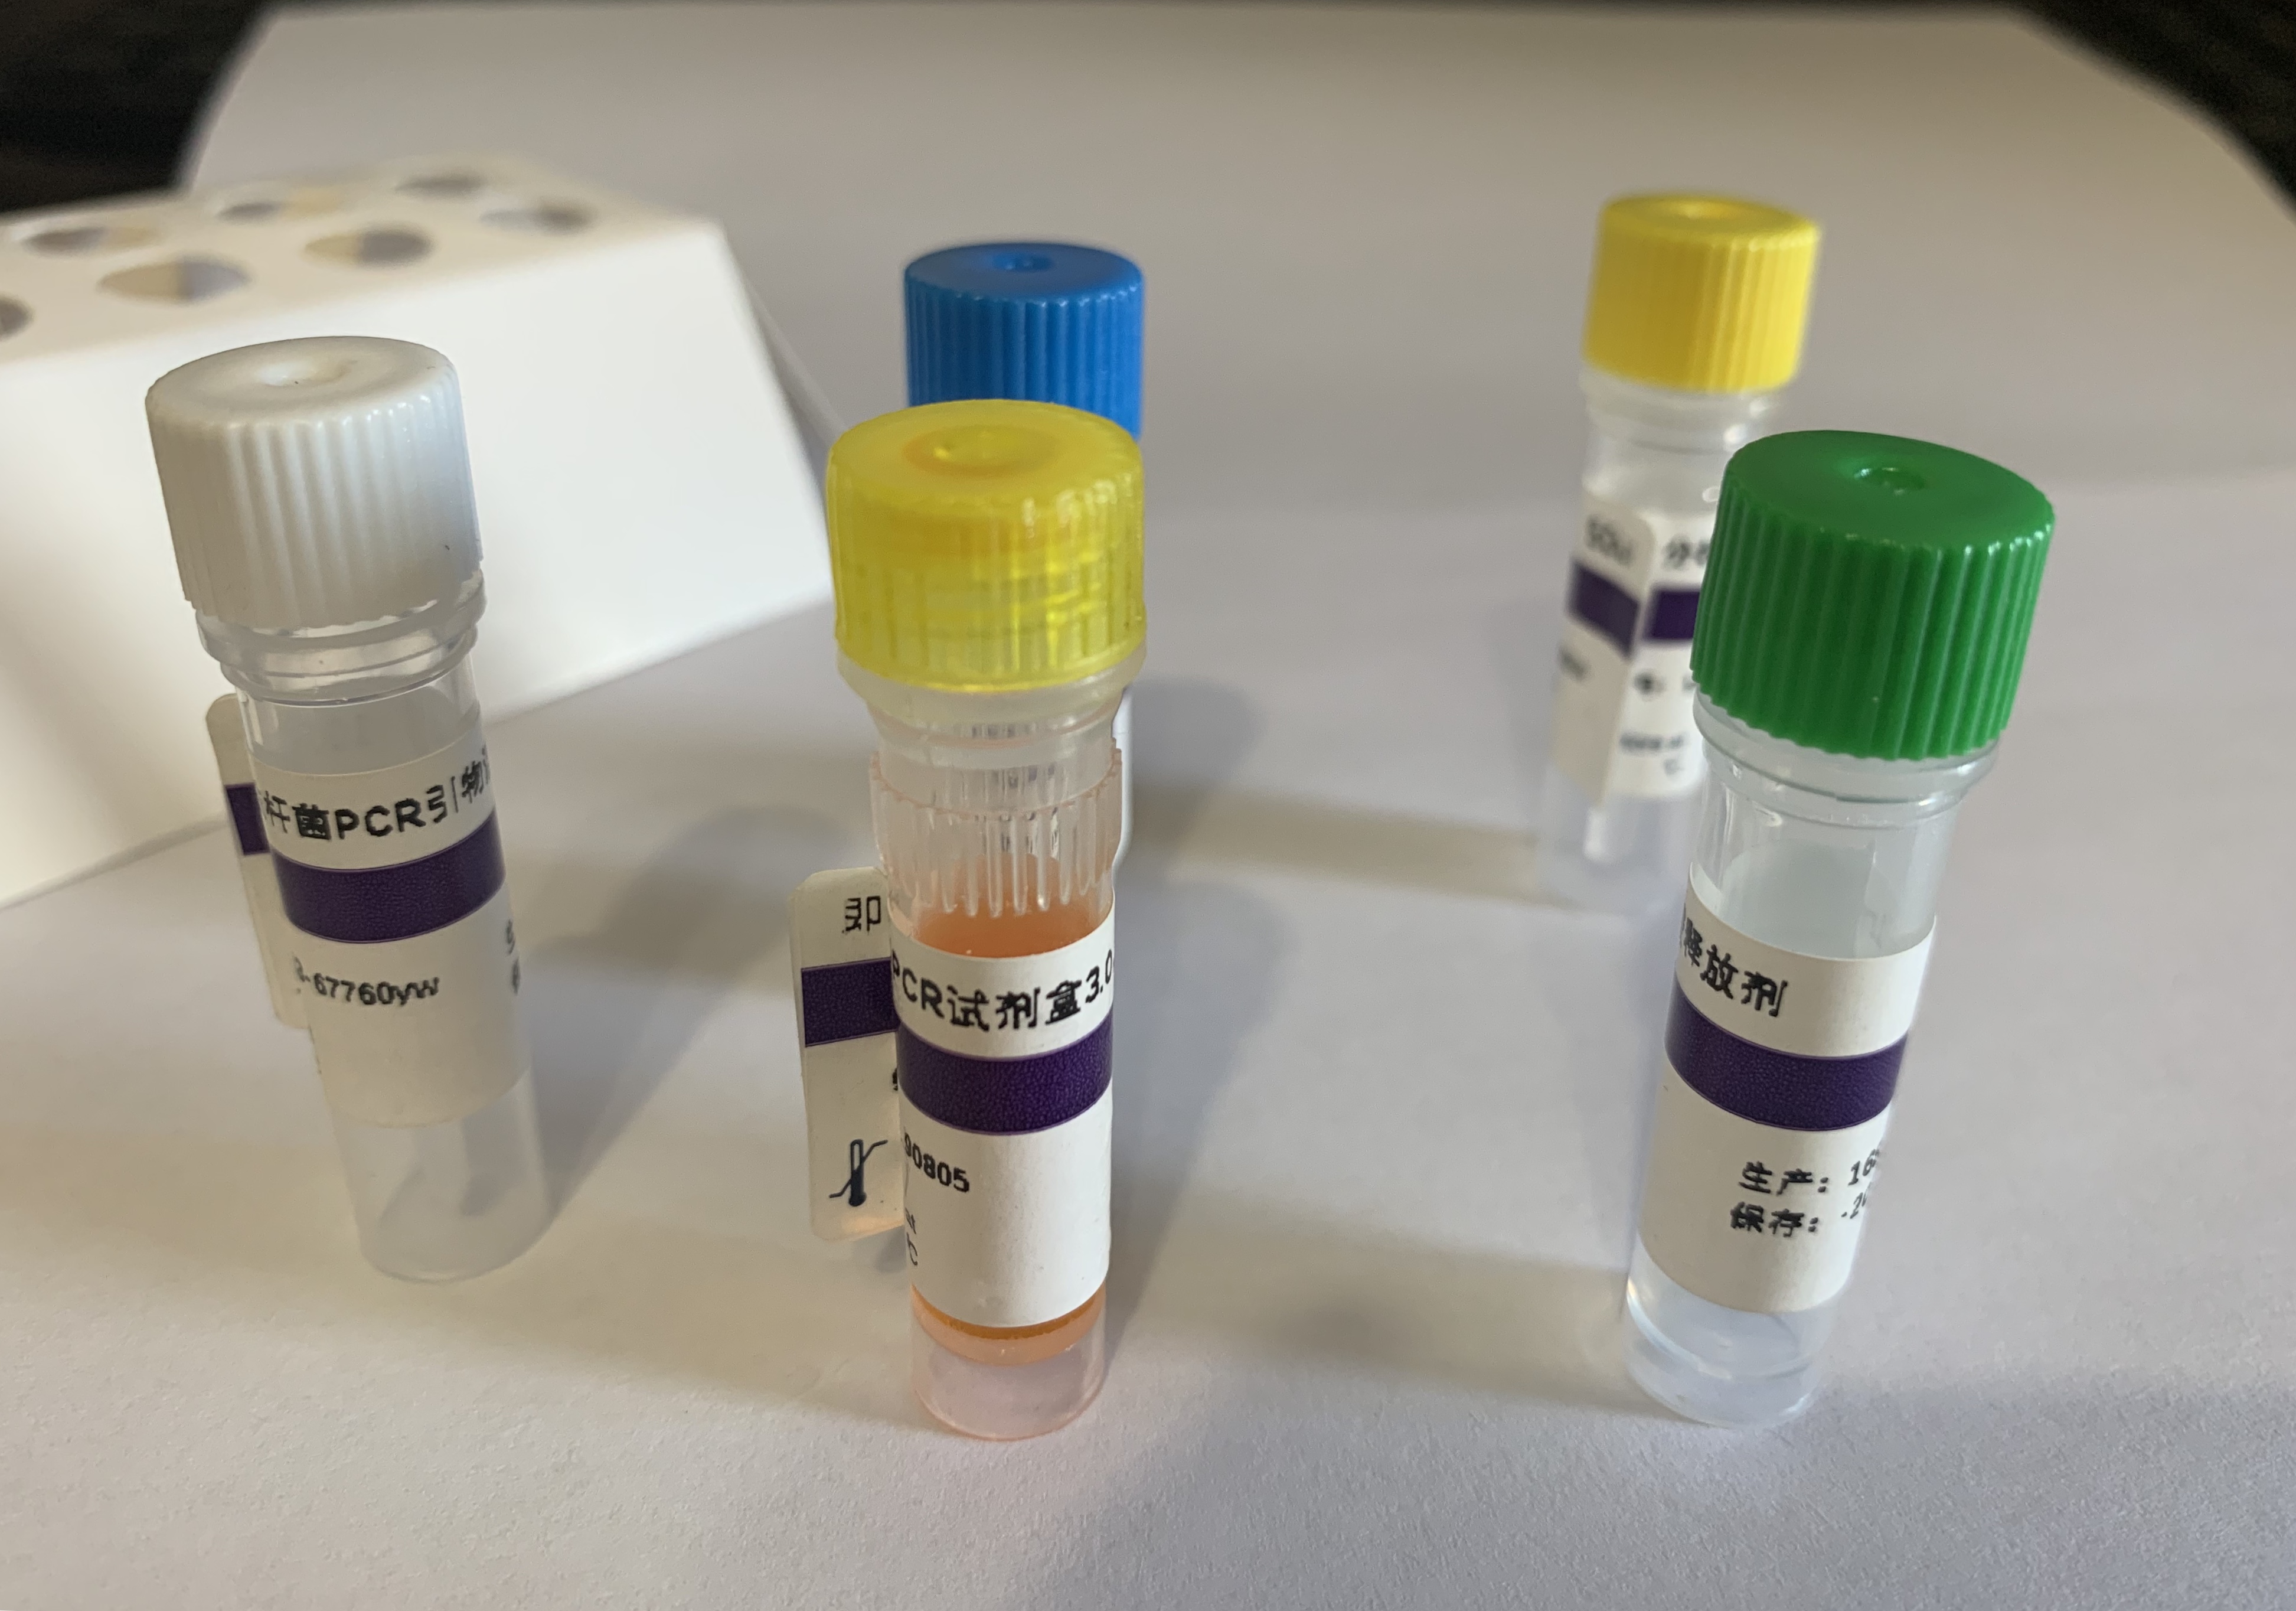 人副流感病毒4B型RT-PCR试剂盒